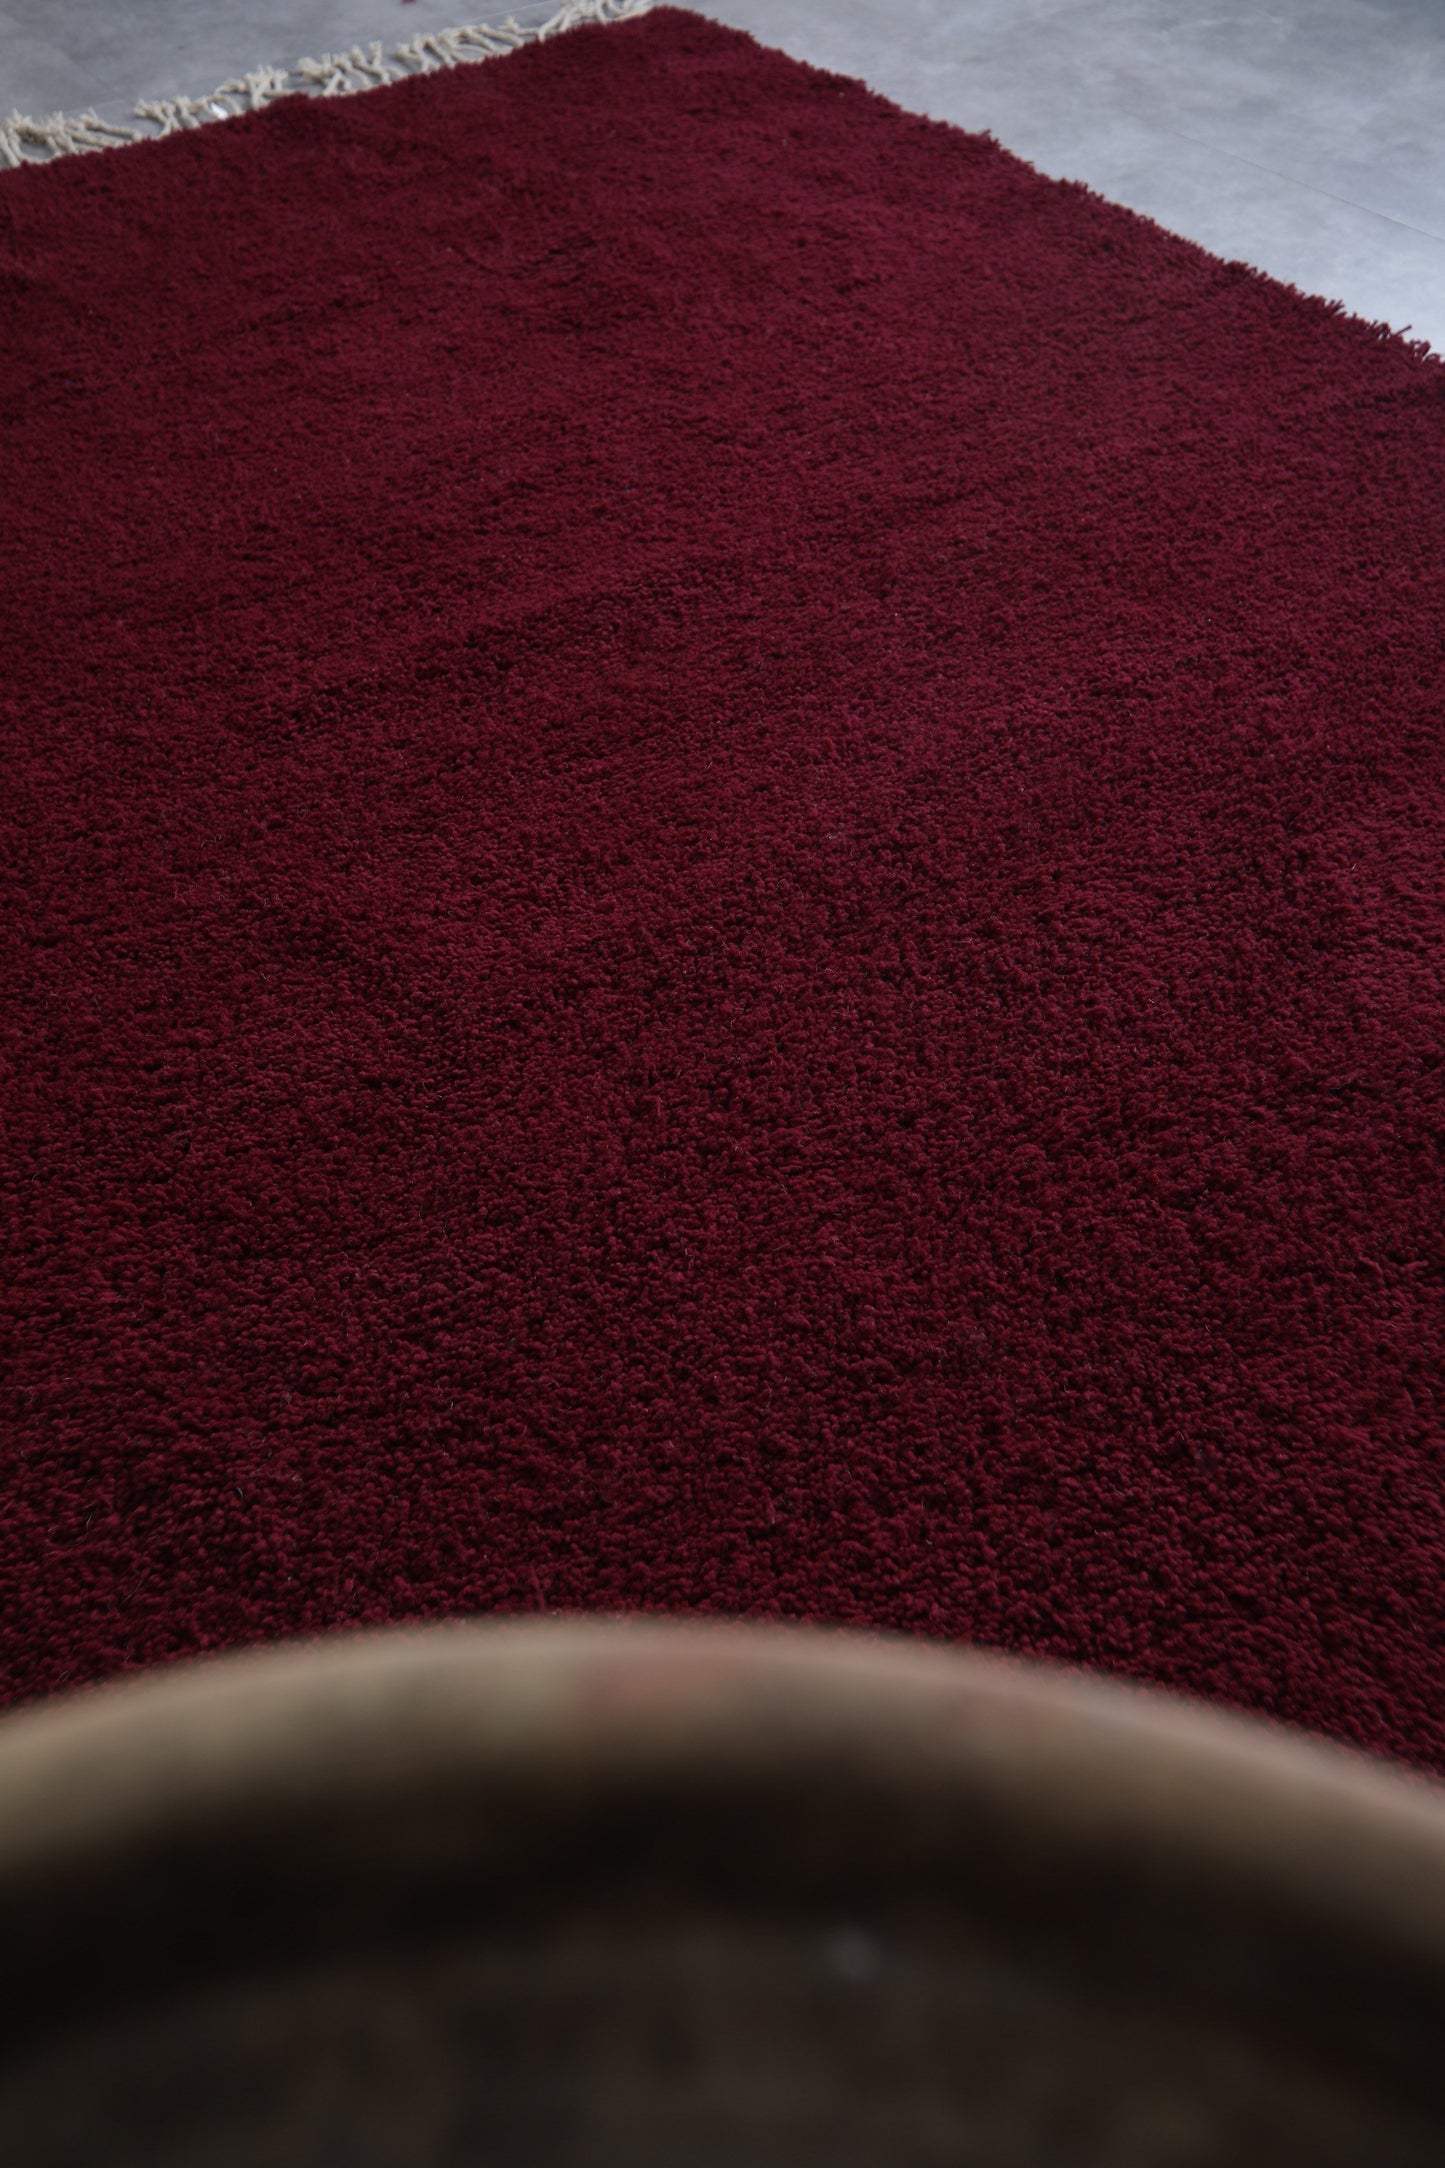 Amazing Moroccan rug burgundy - Handmade Custom rug